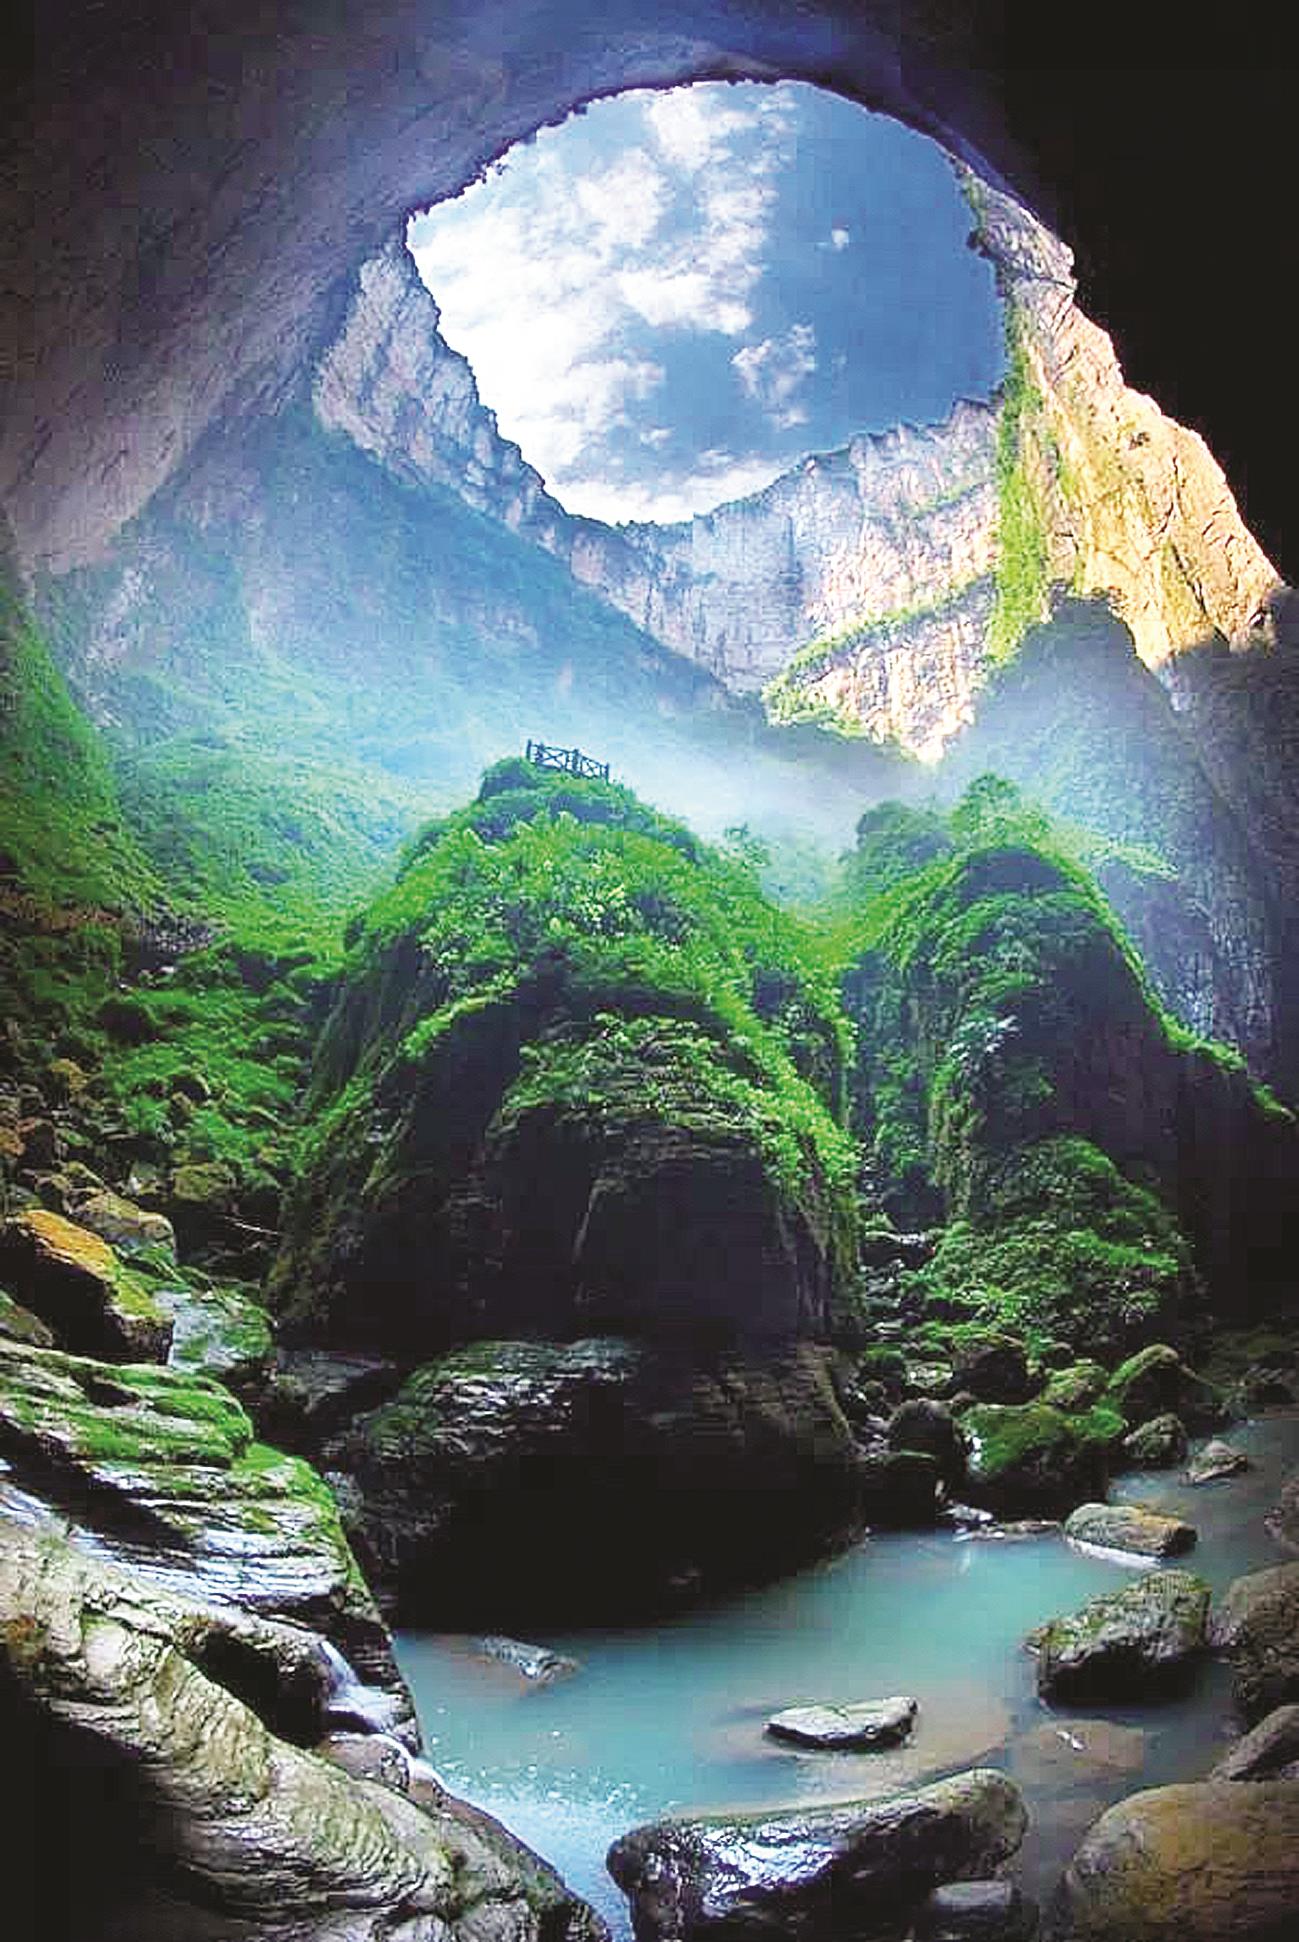 天坑——最美的风景在地下|画廊|中国国家地理网